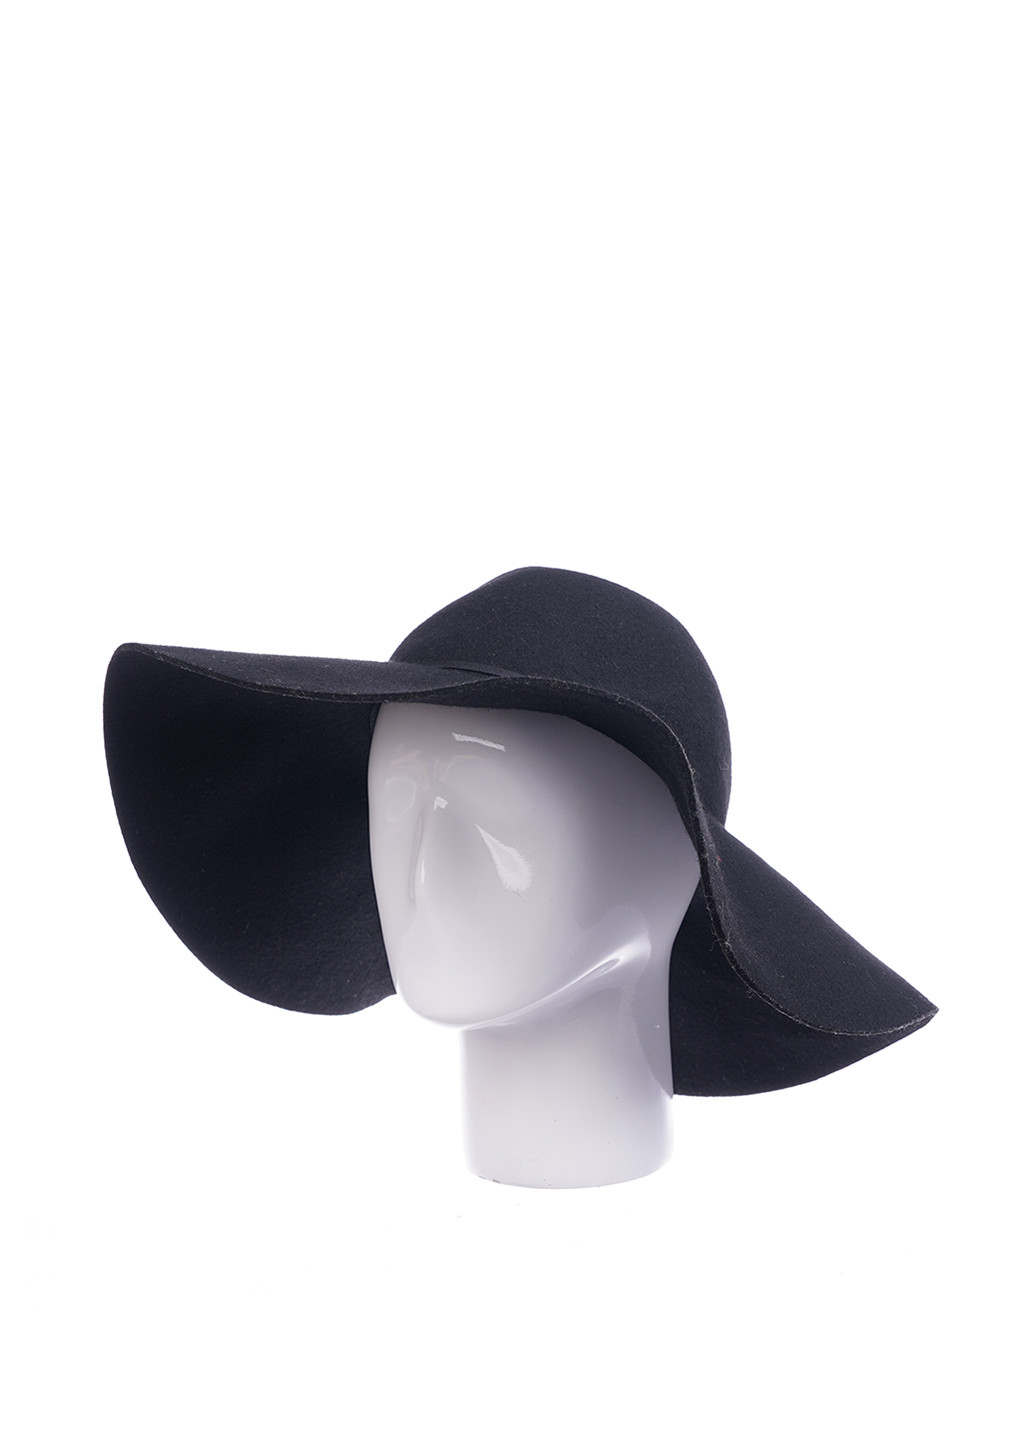 Шляпа Monki широкополая однотонная чёрная кэжуал шерсть